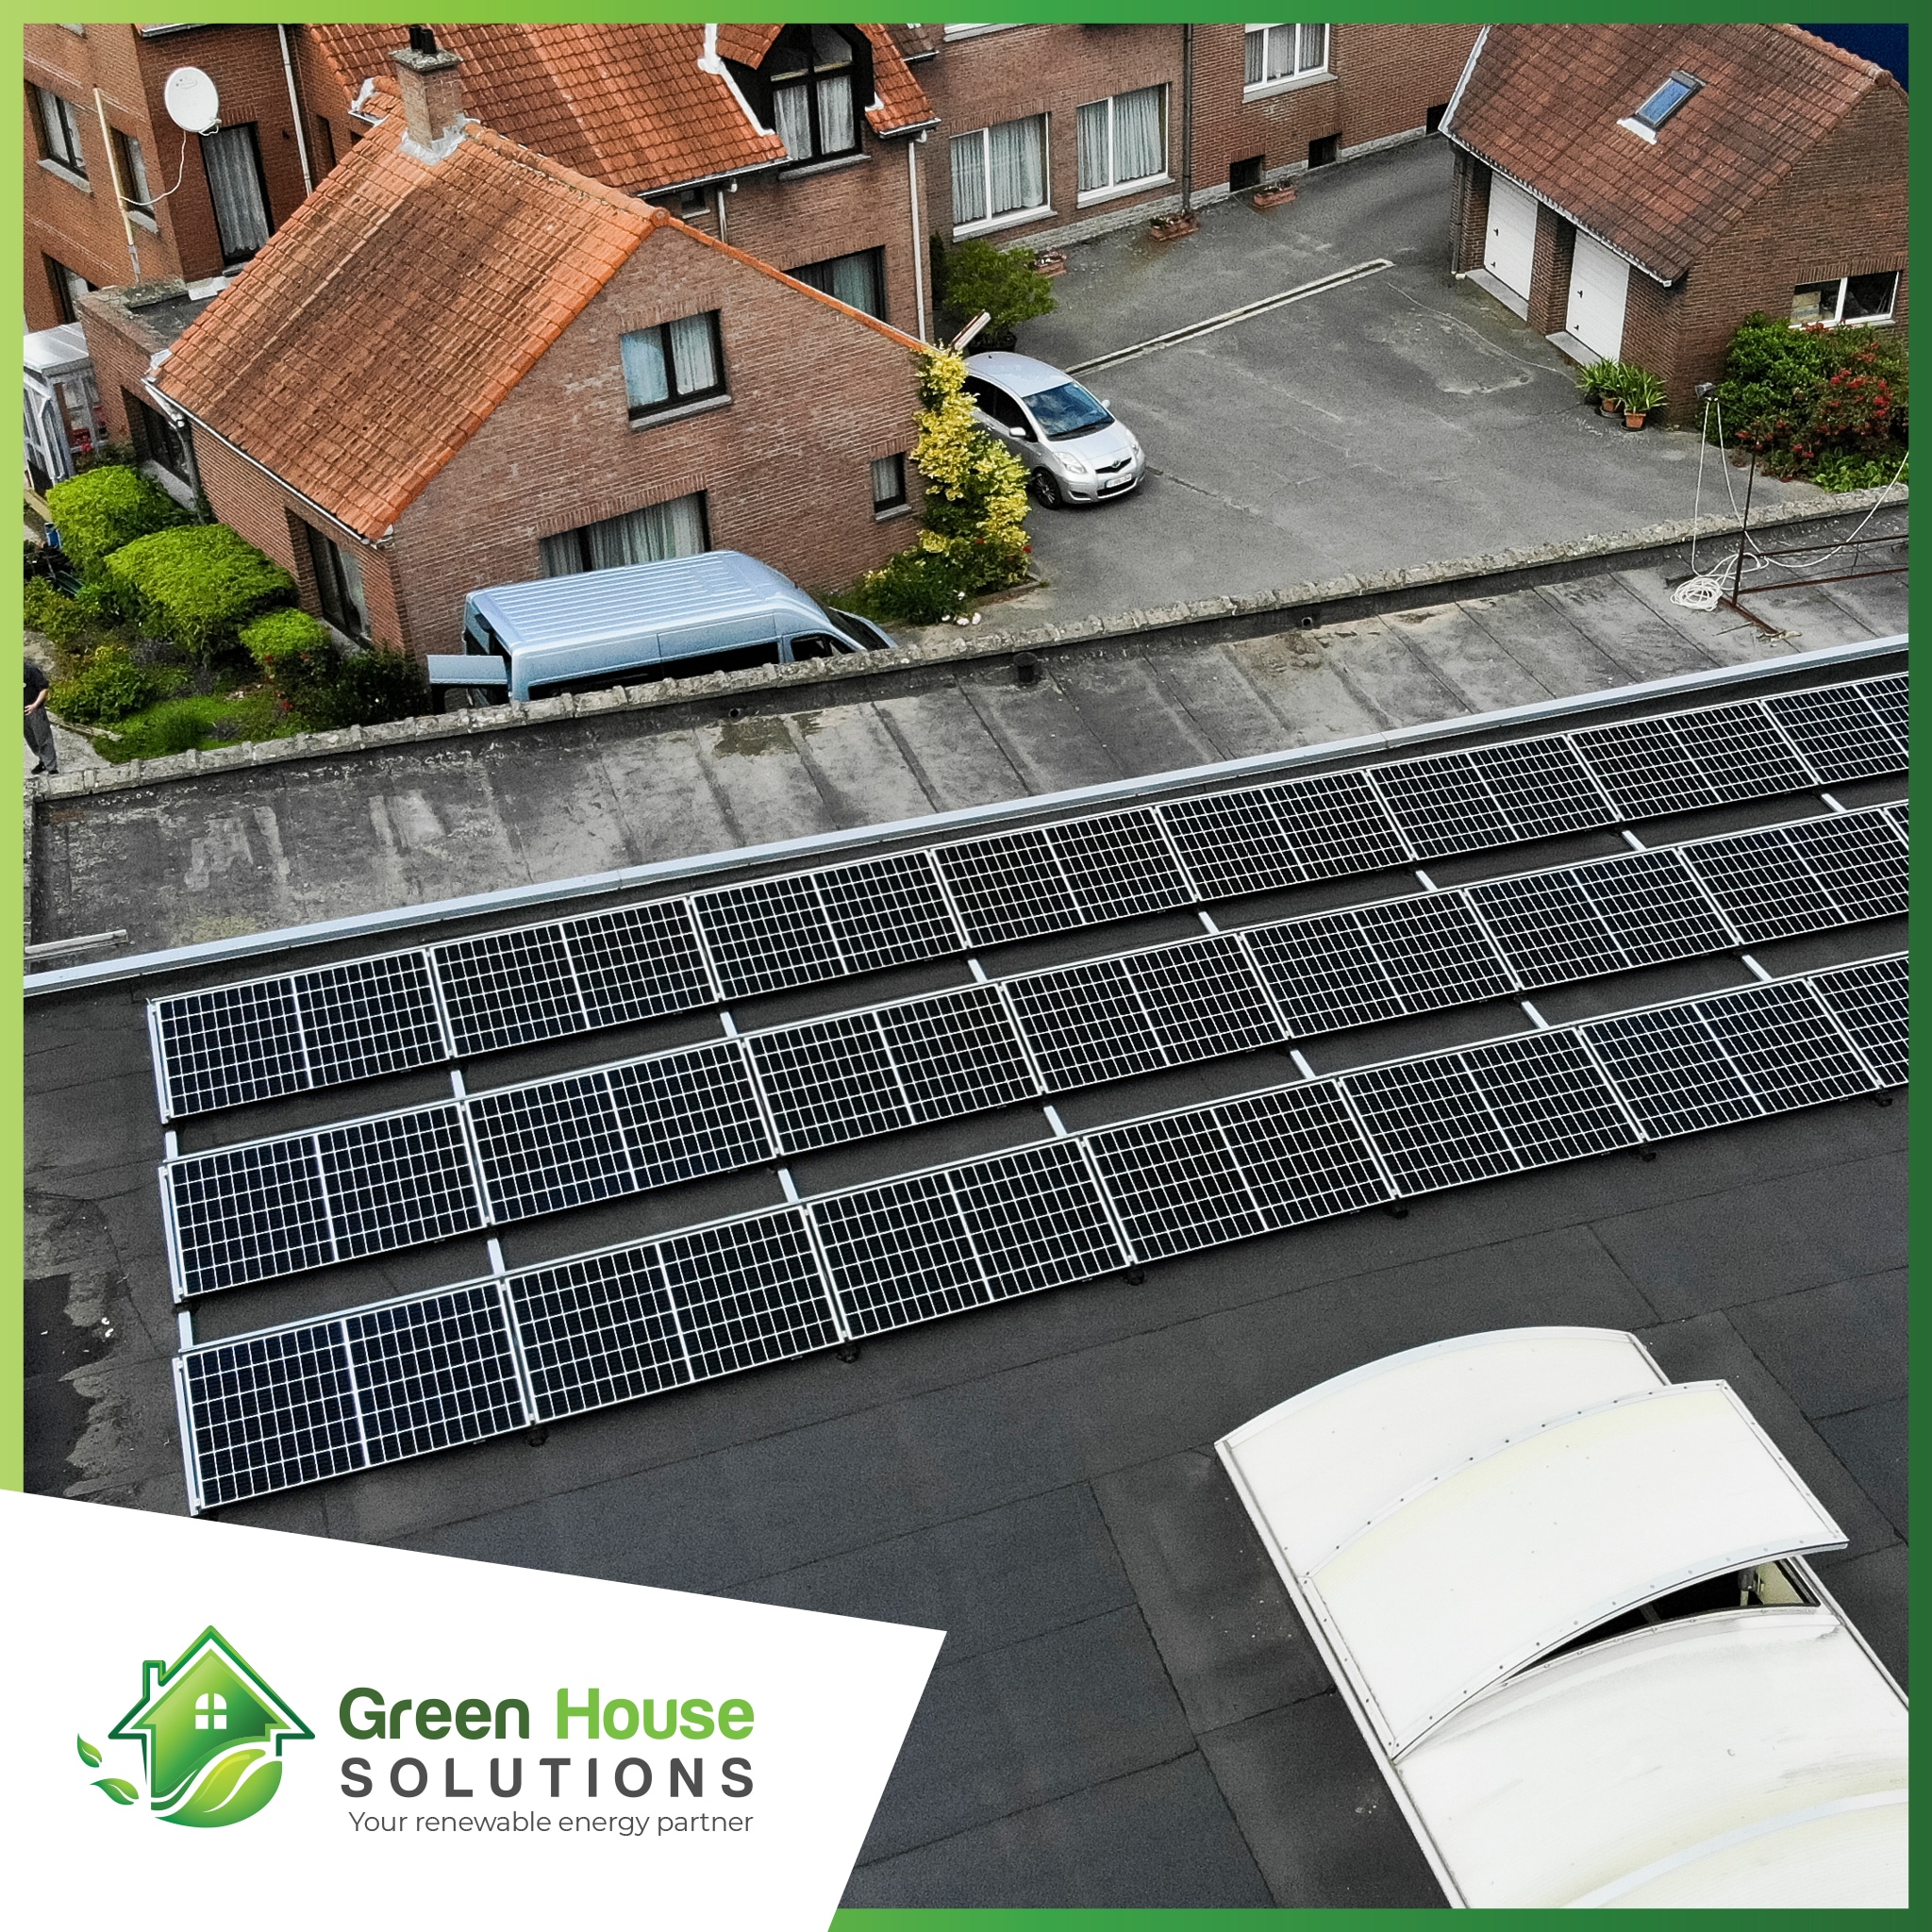 Green House Solutions zonnepanelen plaatsen installeren of kopen 00011 1